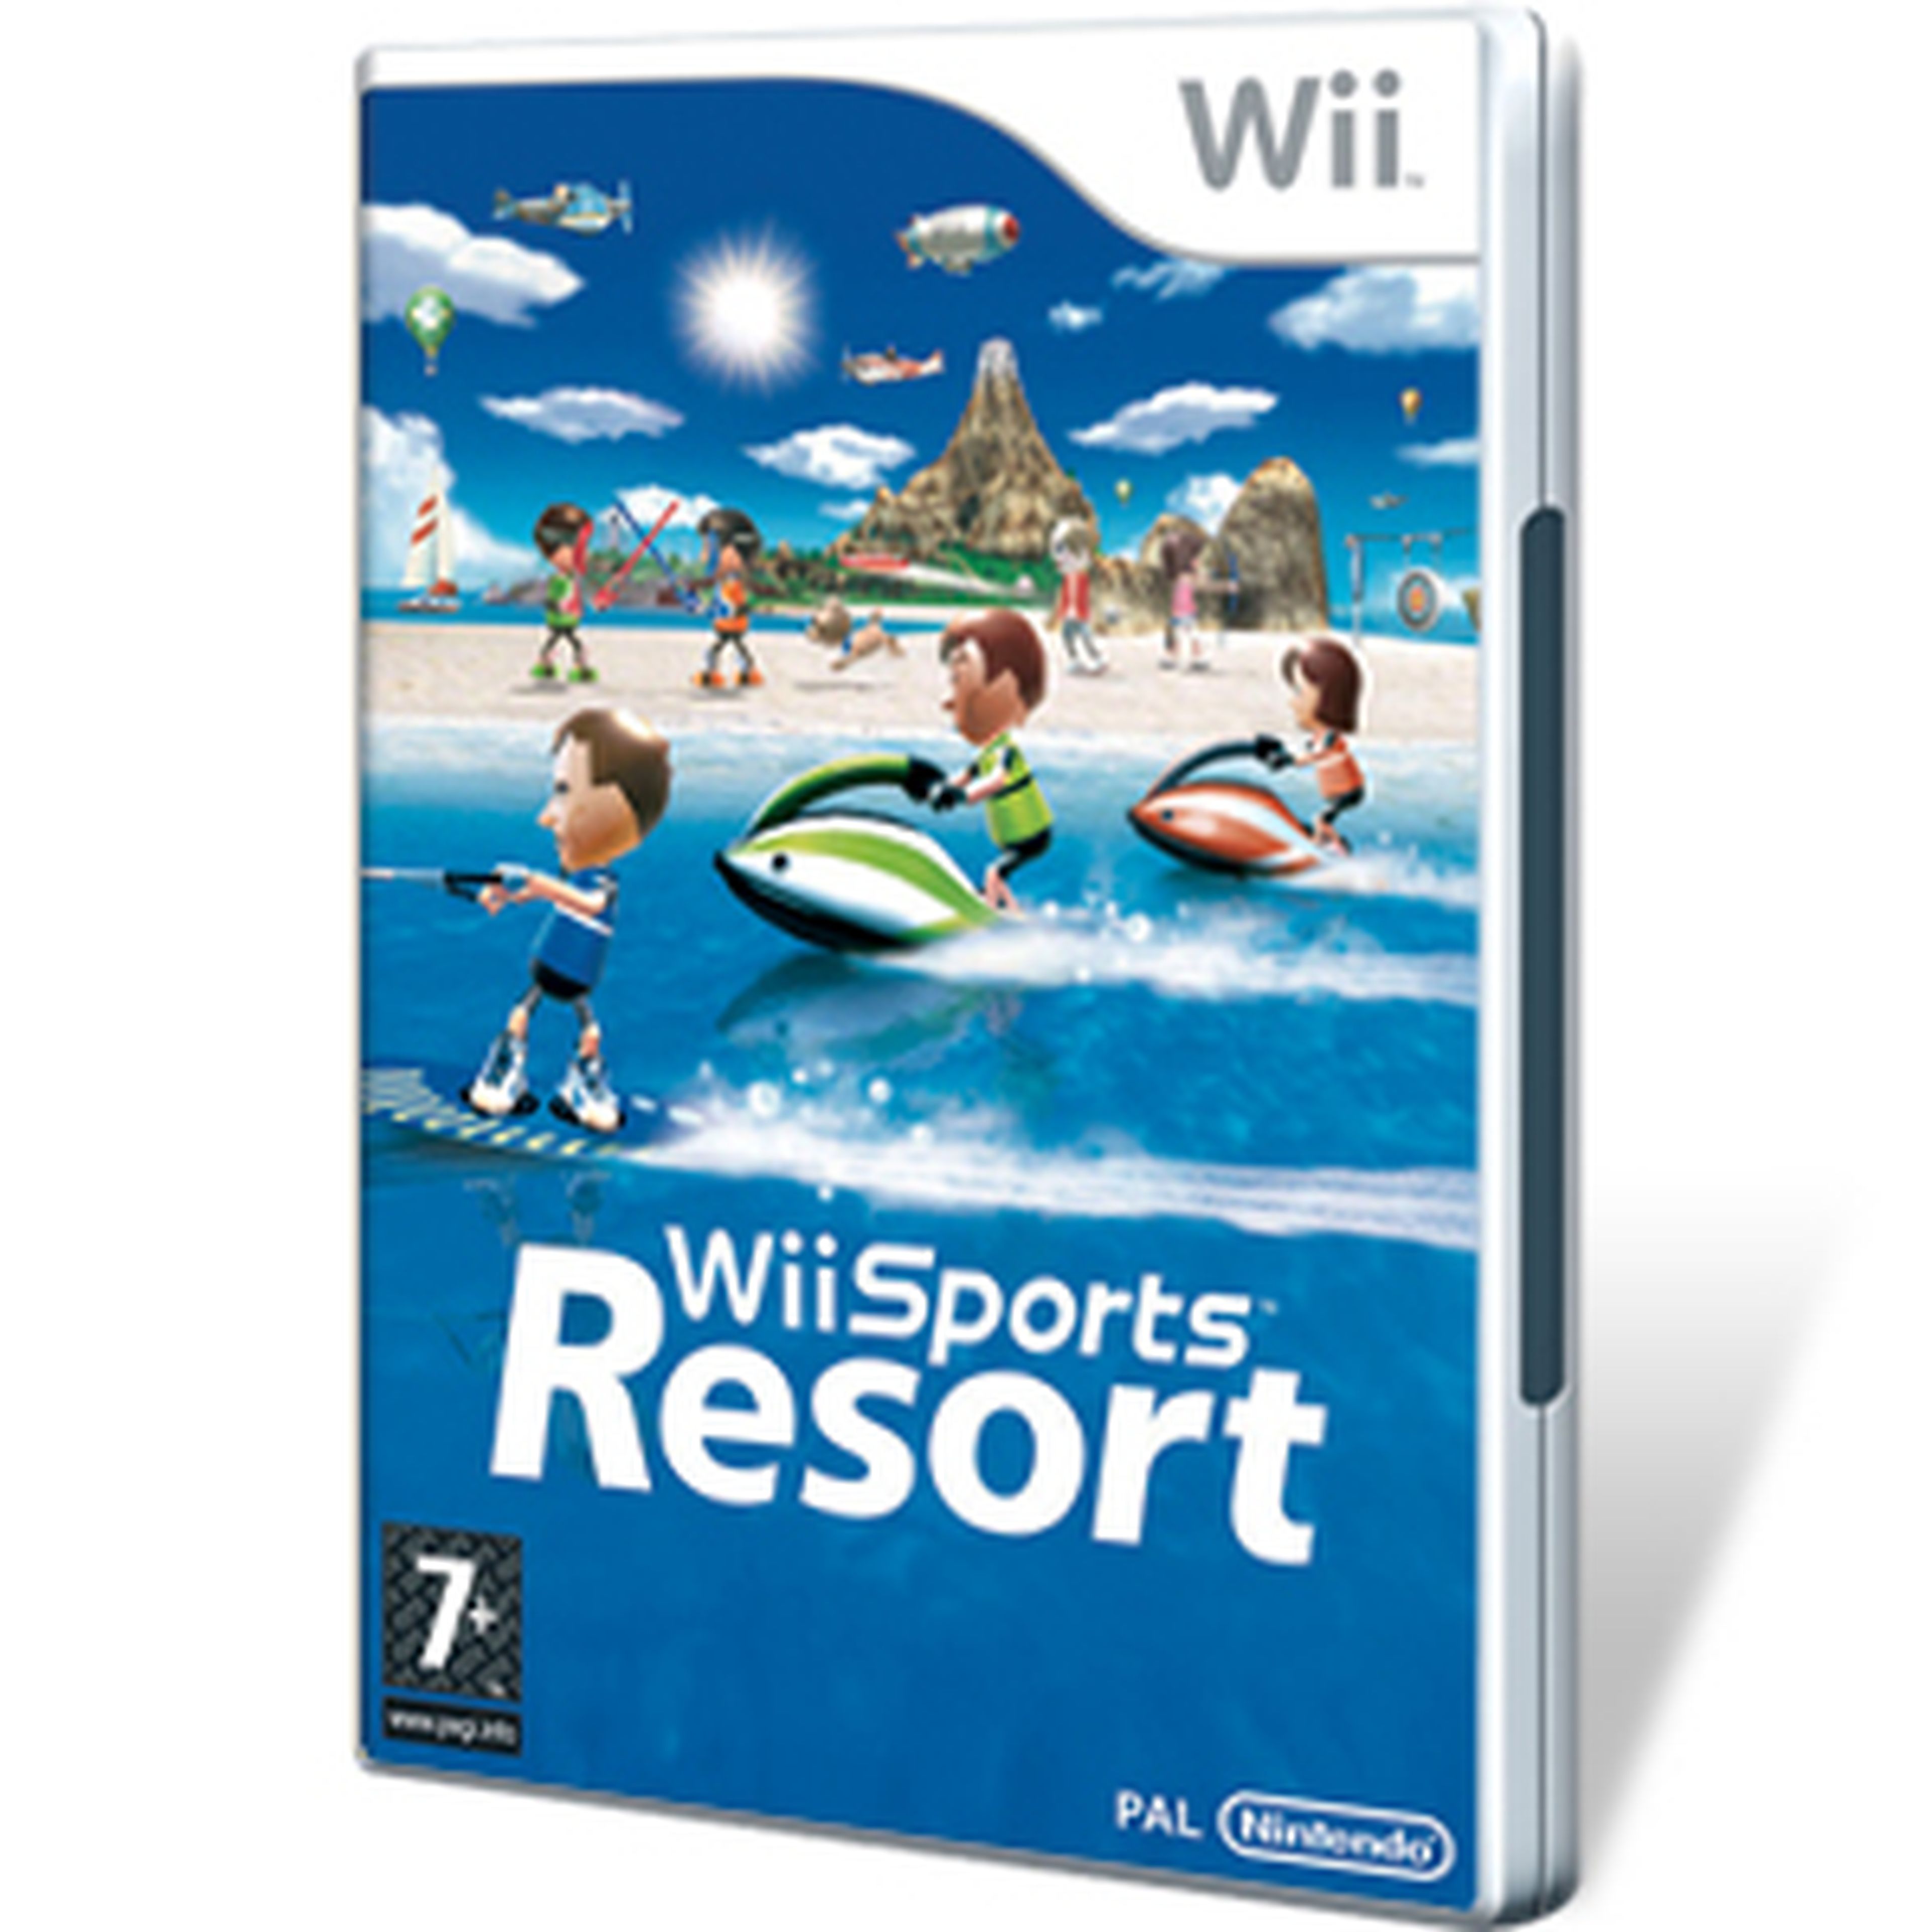 Wii Sports Resort para Wii